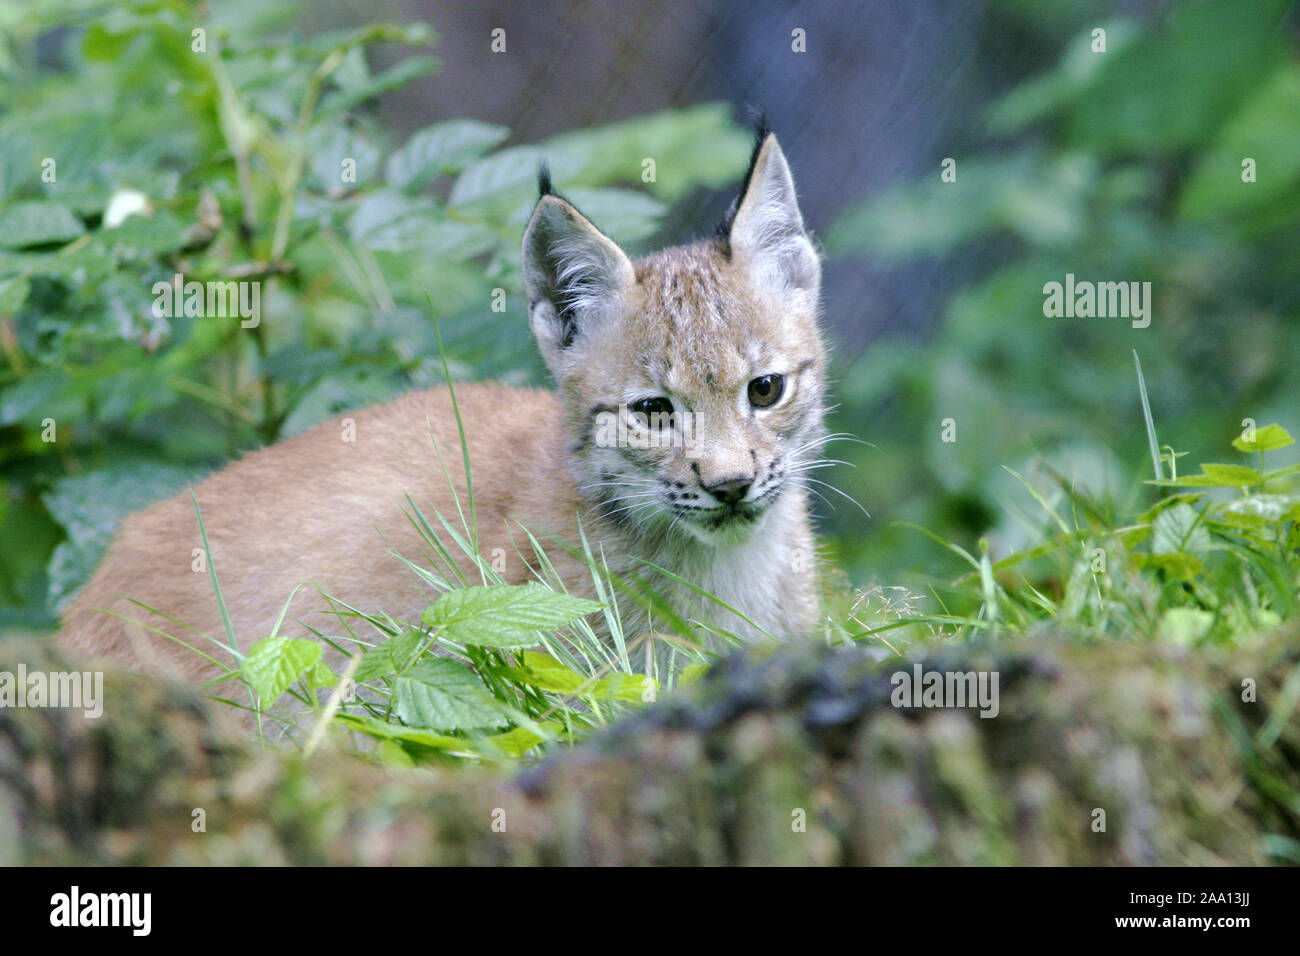 Junger Luchs (Lynx lynx) beobachtet die Umgebung, Tierpark Weilburg, Hessen, Deutschland / Jung lynx (Lynx lynx) is observing the environment, captive Stock Photo